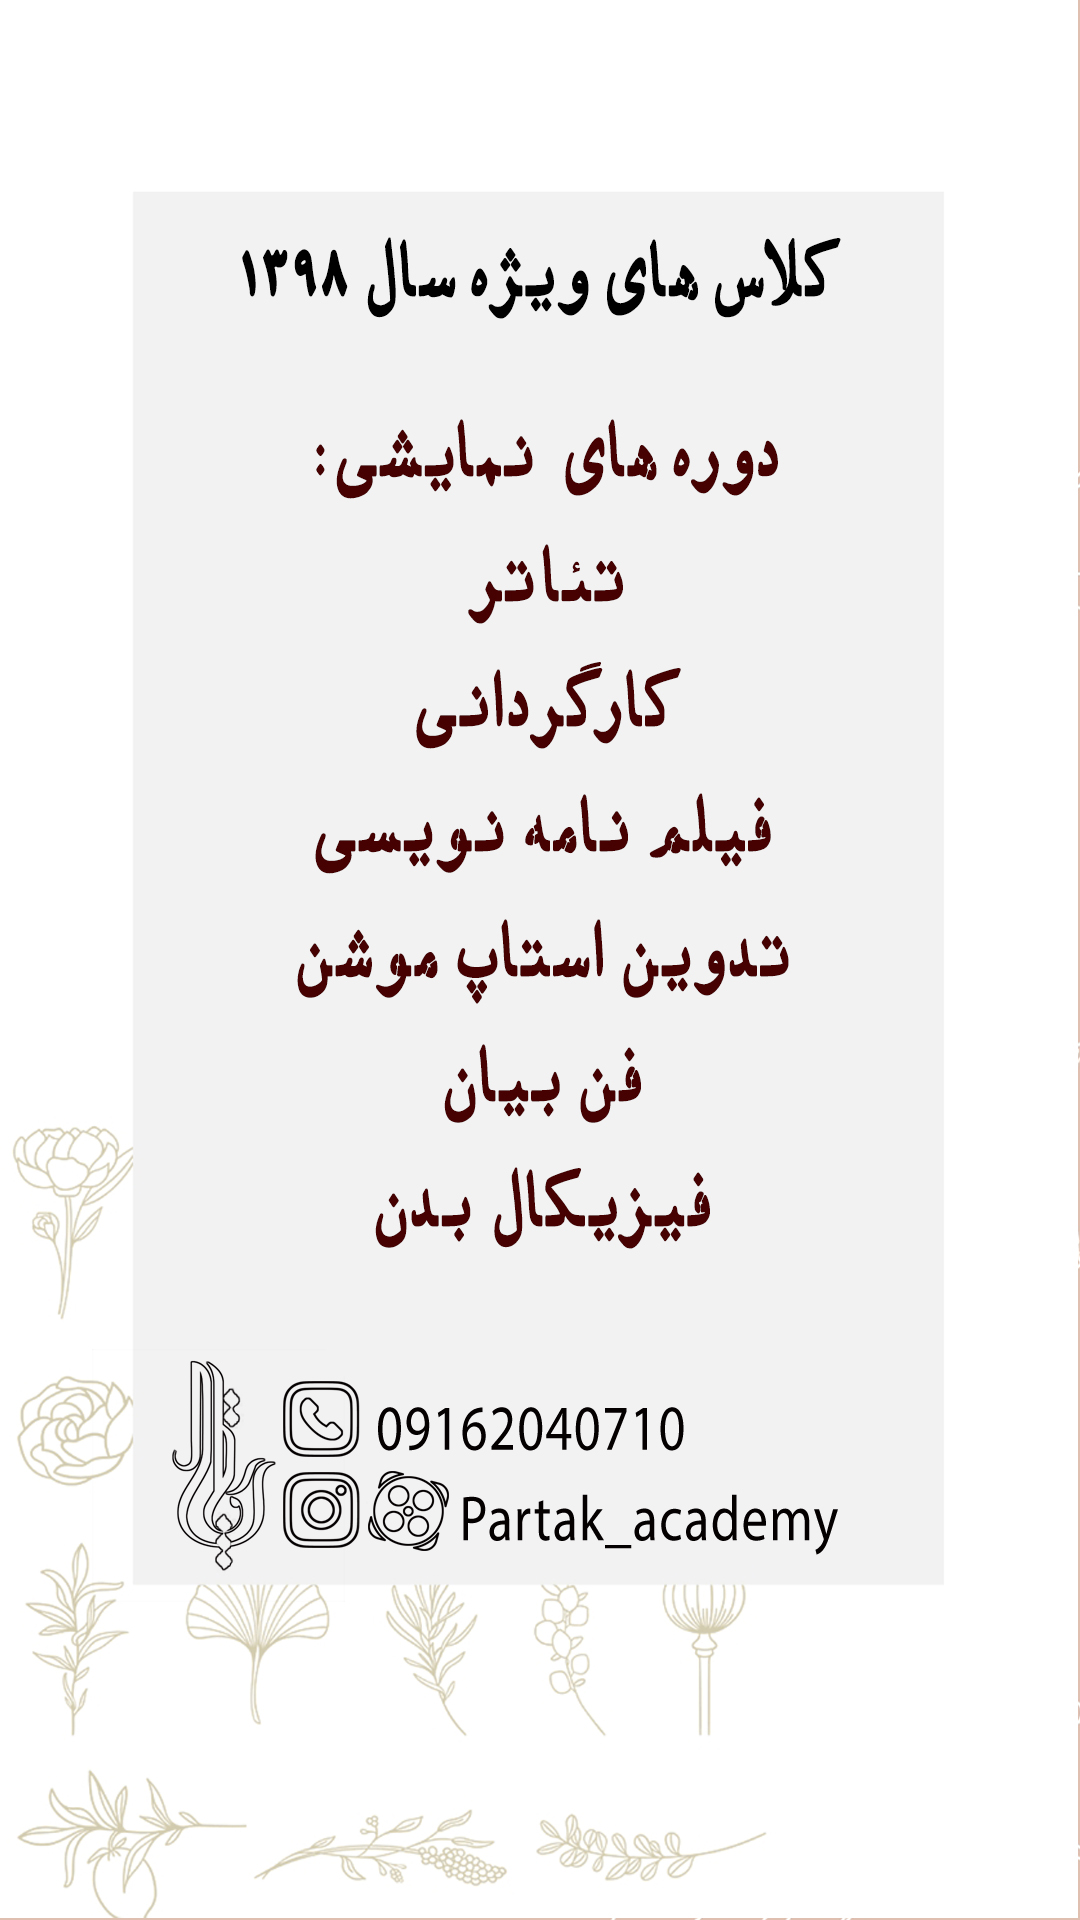 هزینه کلاس تئاتر اصفهان 